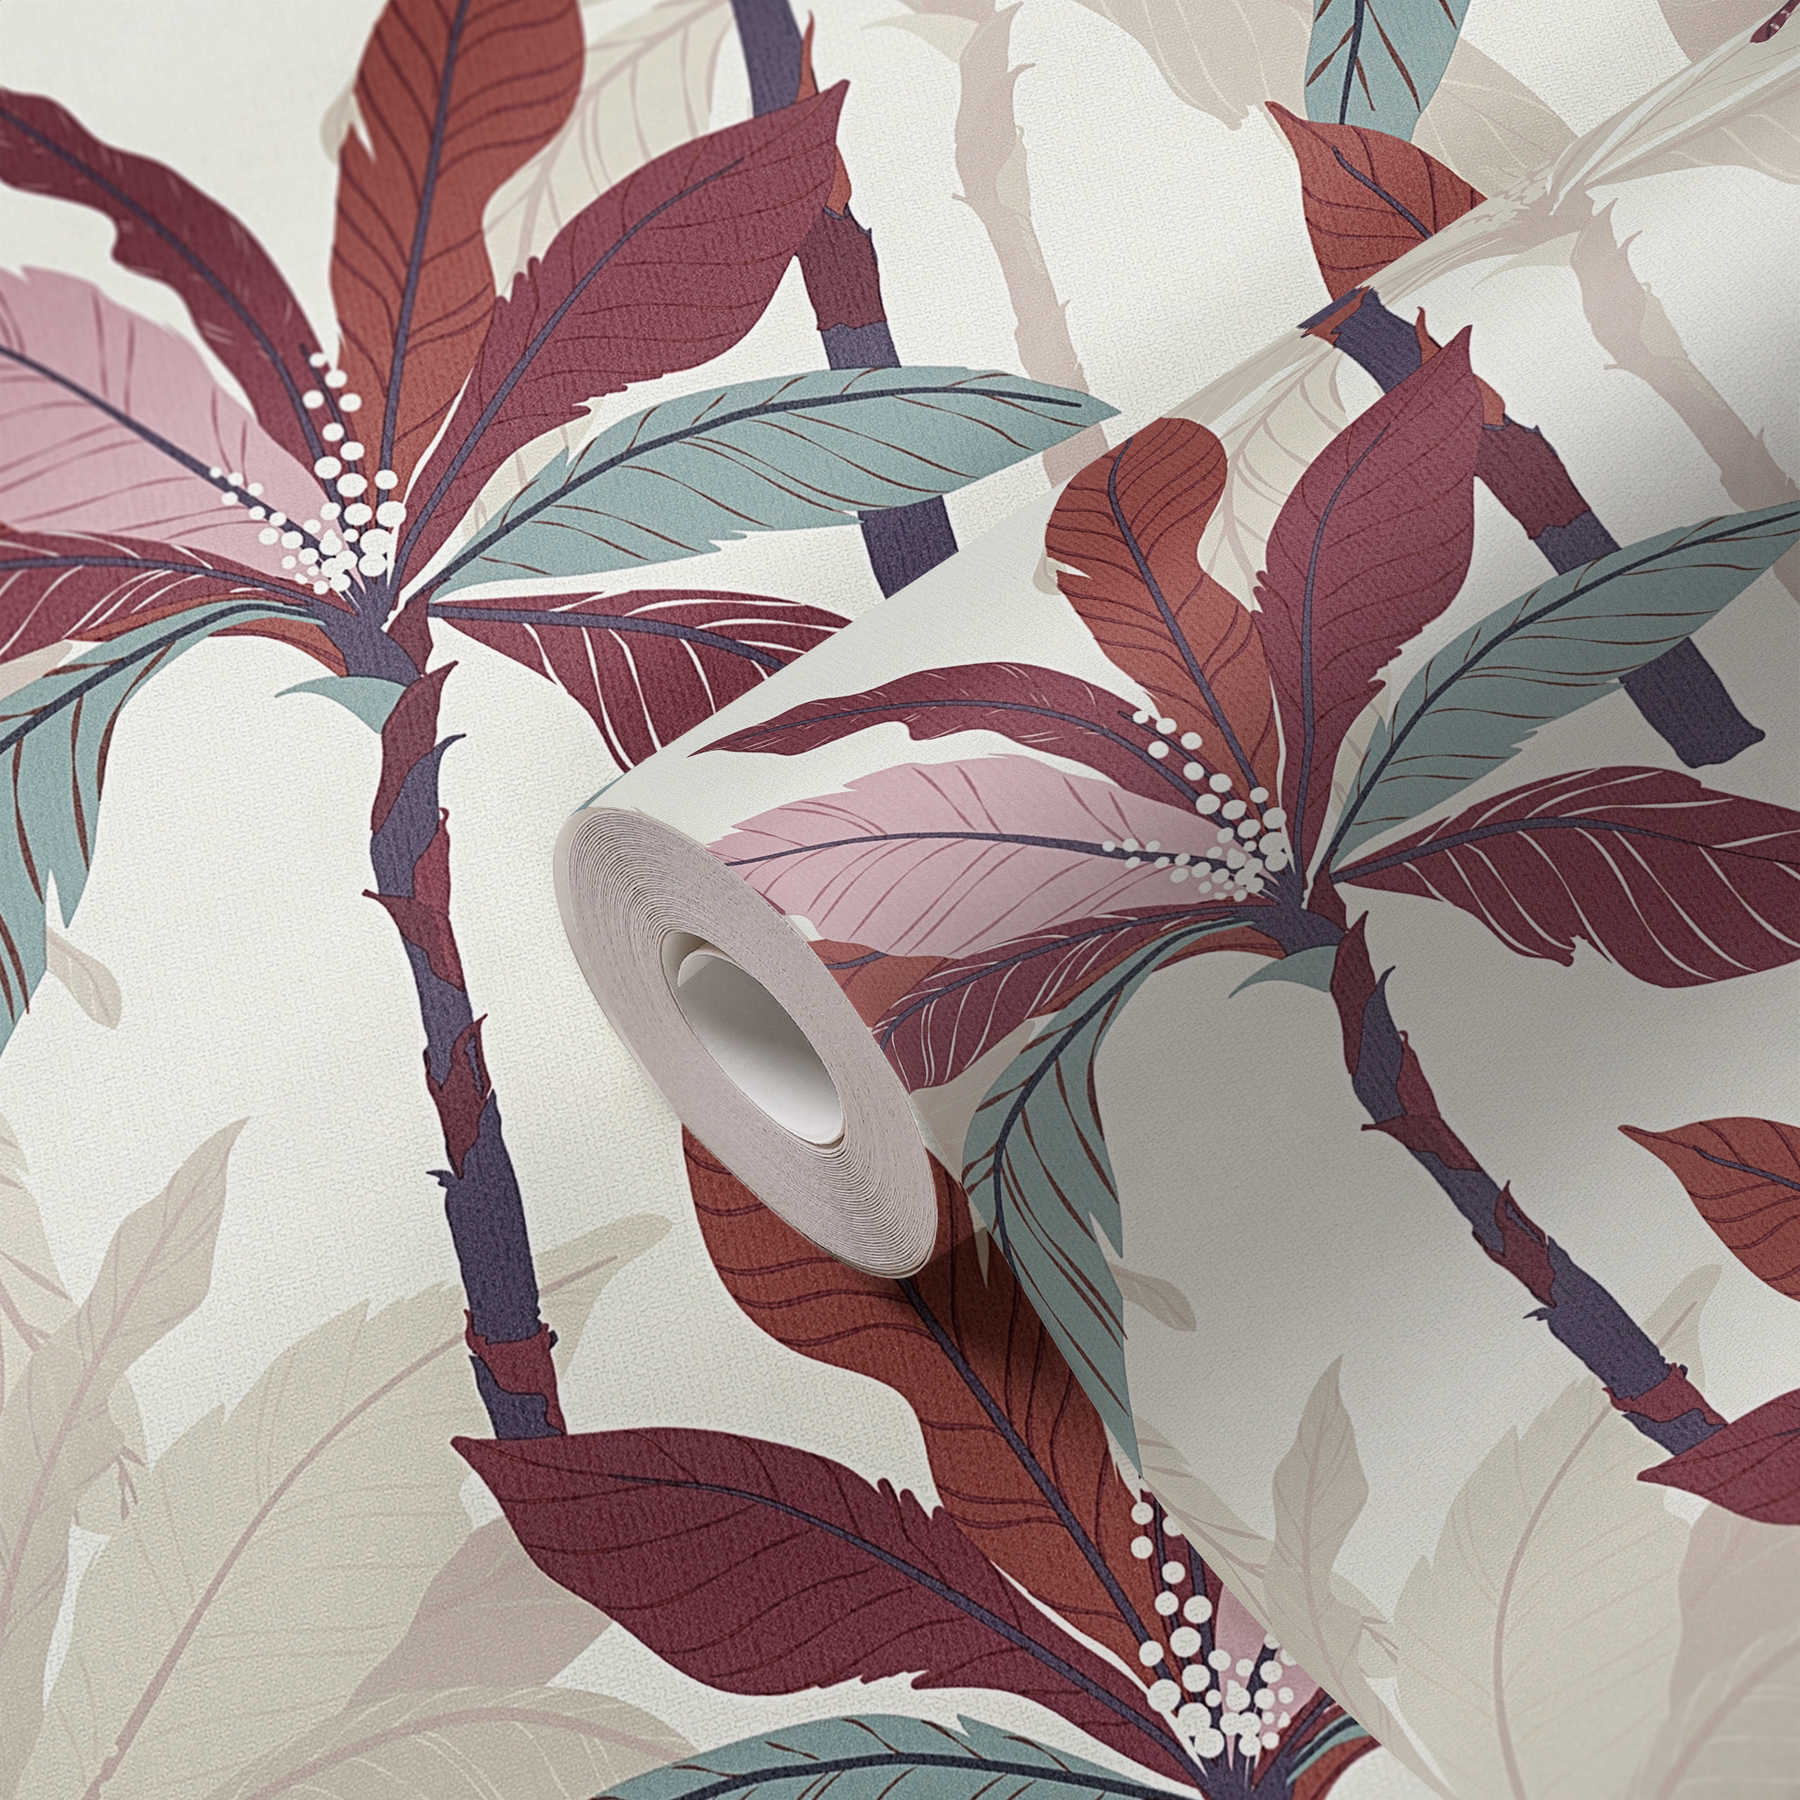             Behang palmboom ontwerp, tropisch patroon - rood, beige, crème
        